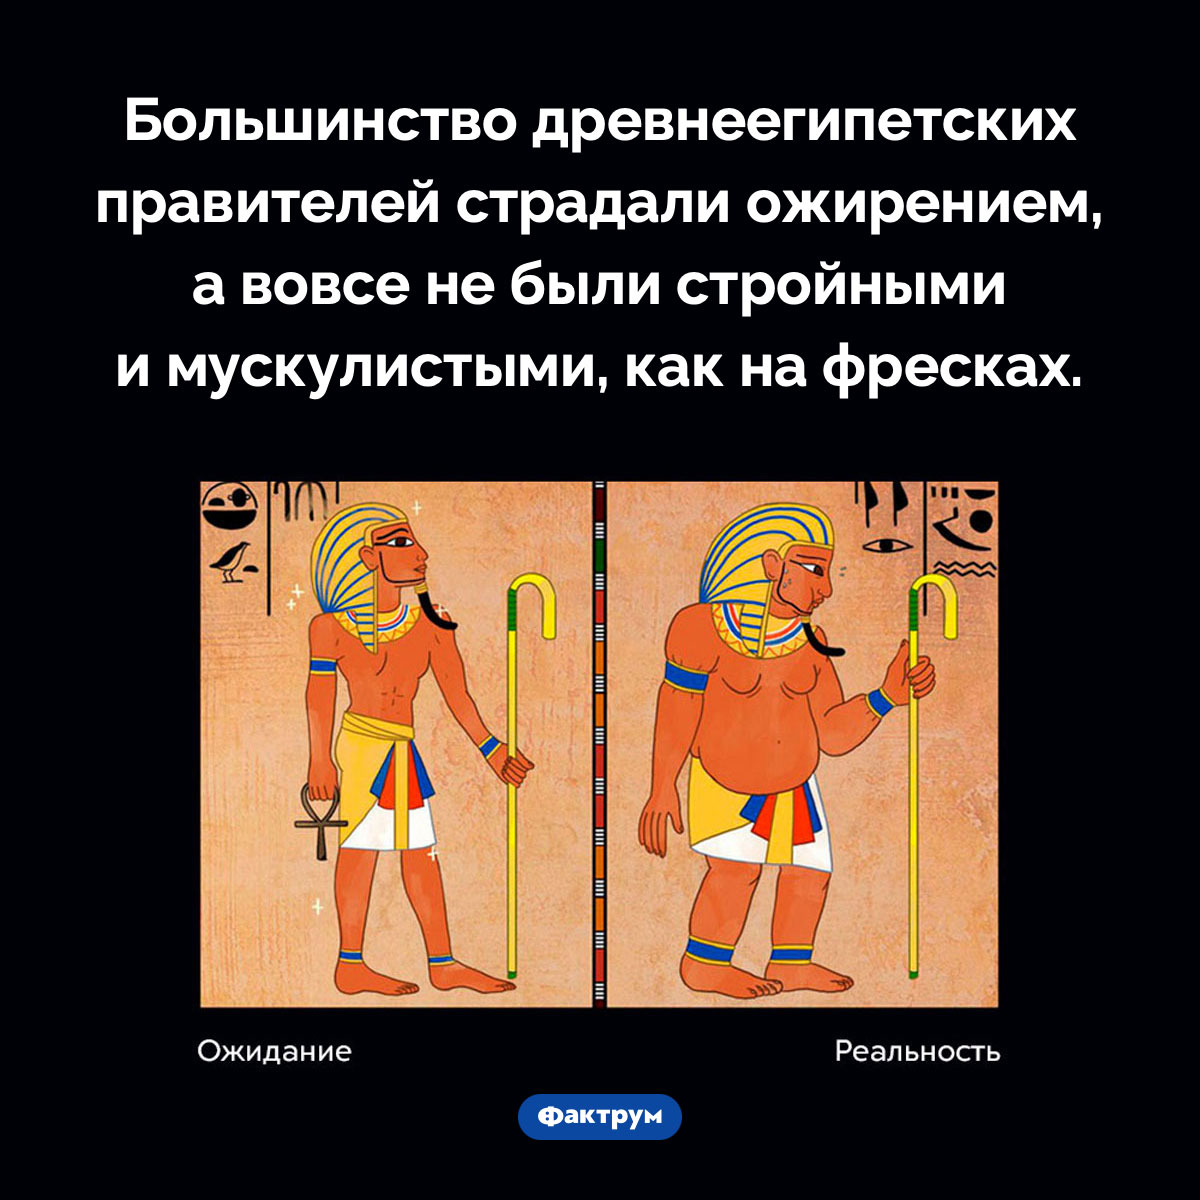 Фараоны были толстыми. Большинство древнеегипетских правителей страдали ожирением, а вовсе не были стройными и мускулистыми, как на фресках.